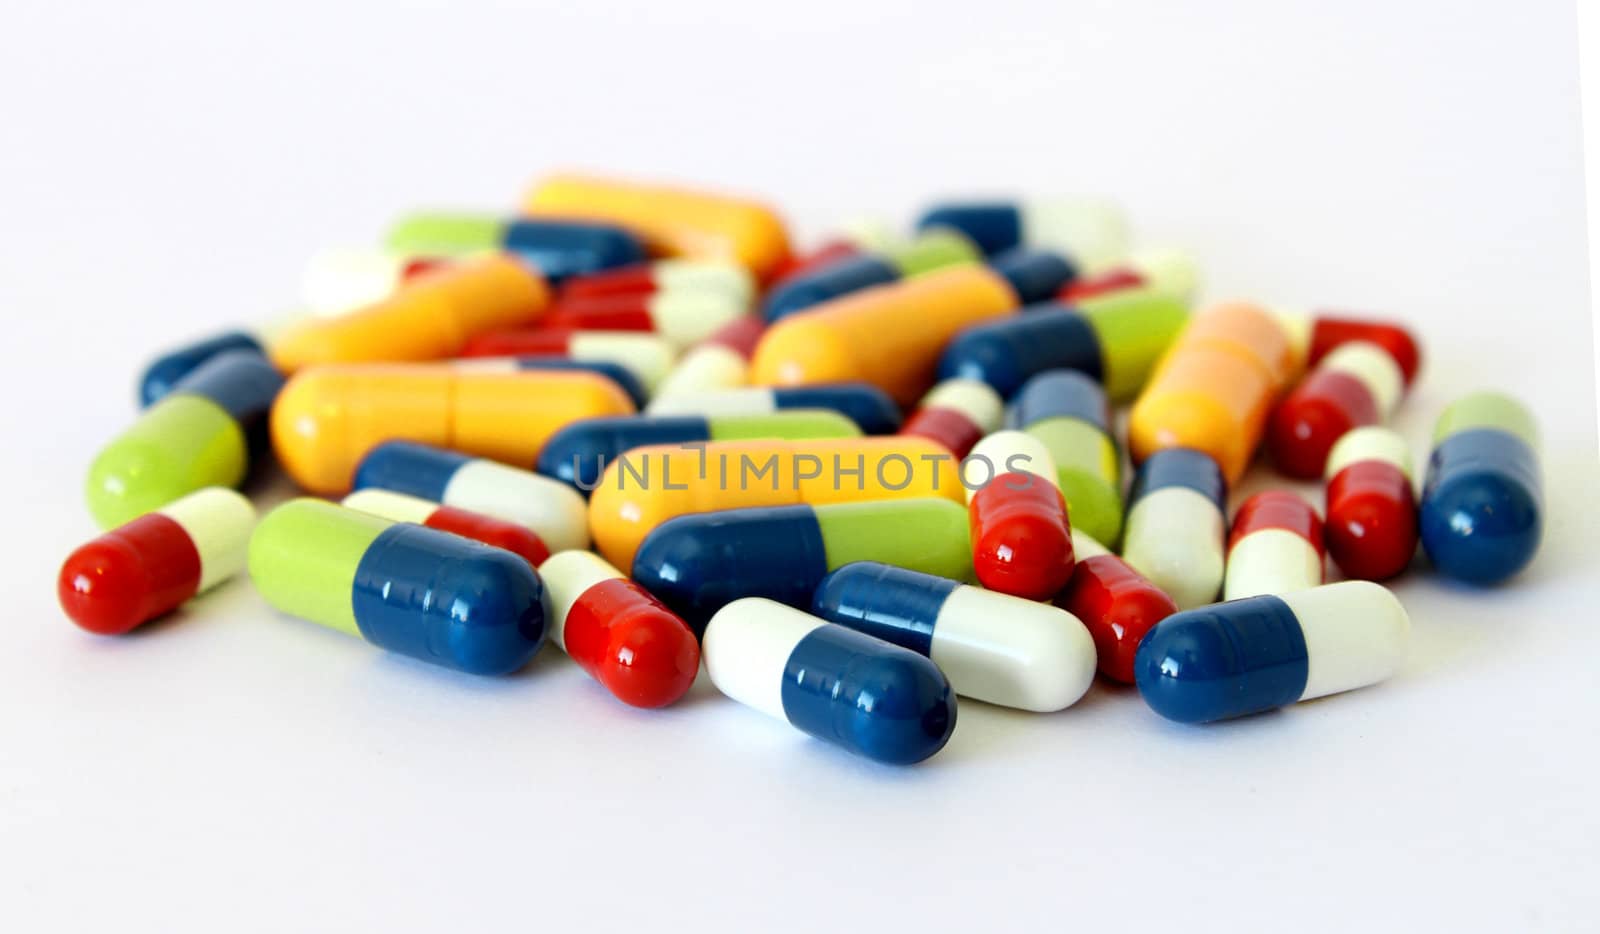 Colorful medical drugs pills vitamins capsules closeup